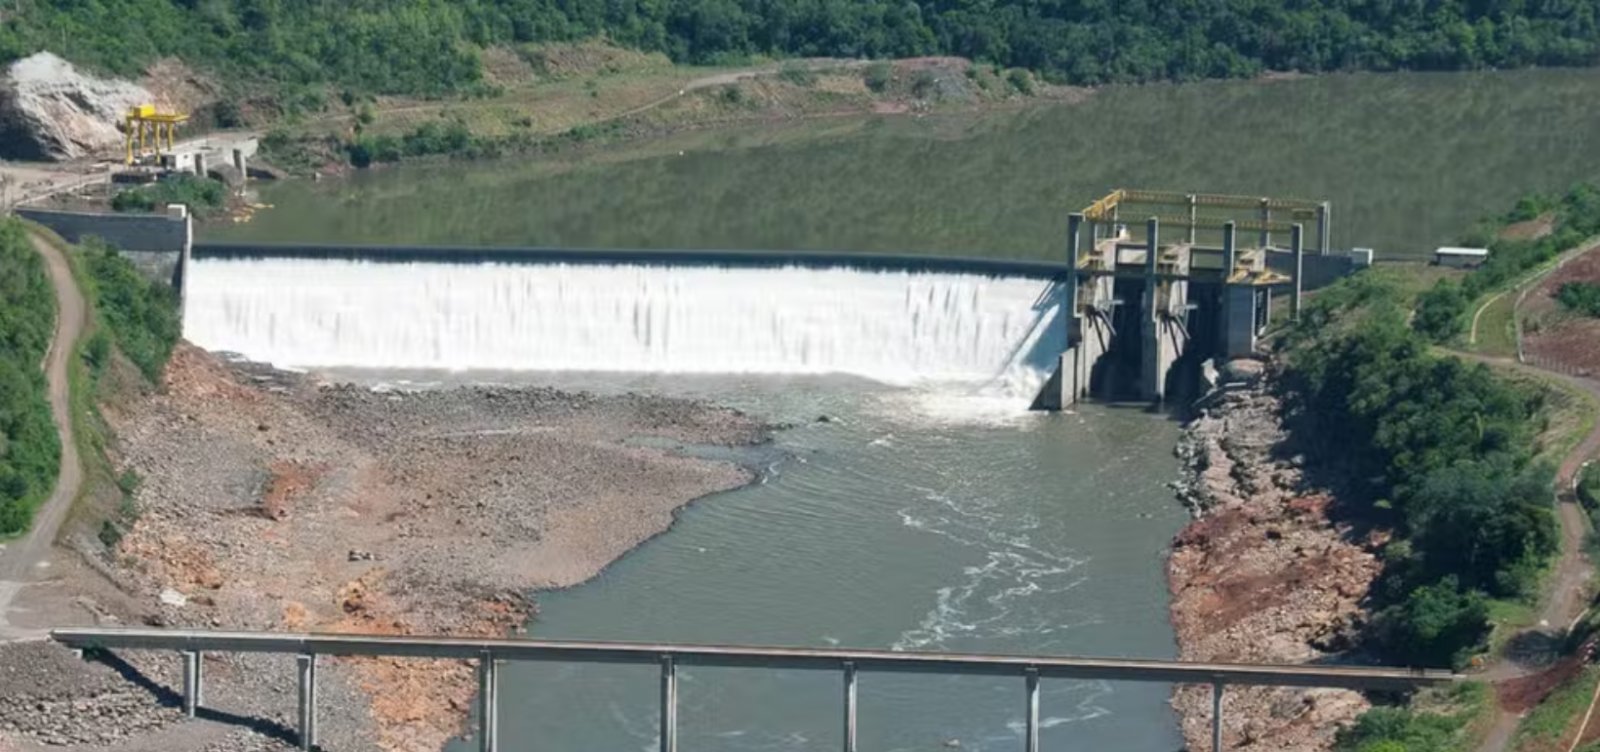 Governador do Rio Grande do Sul diz que barragem 14 de Julho rompeu parcialmente